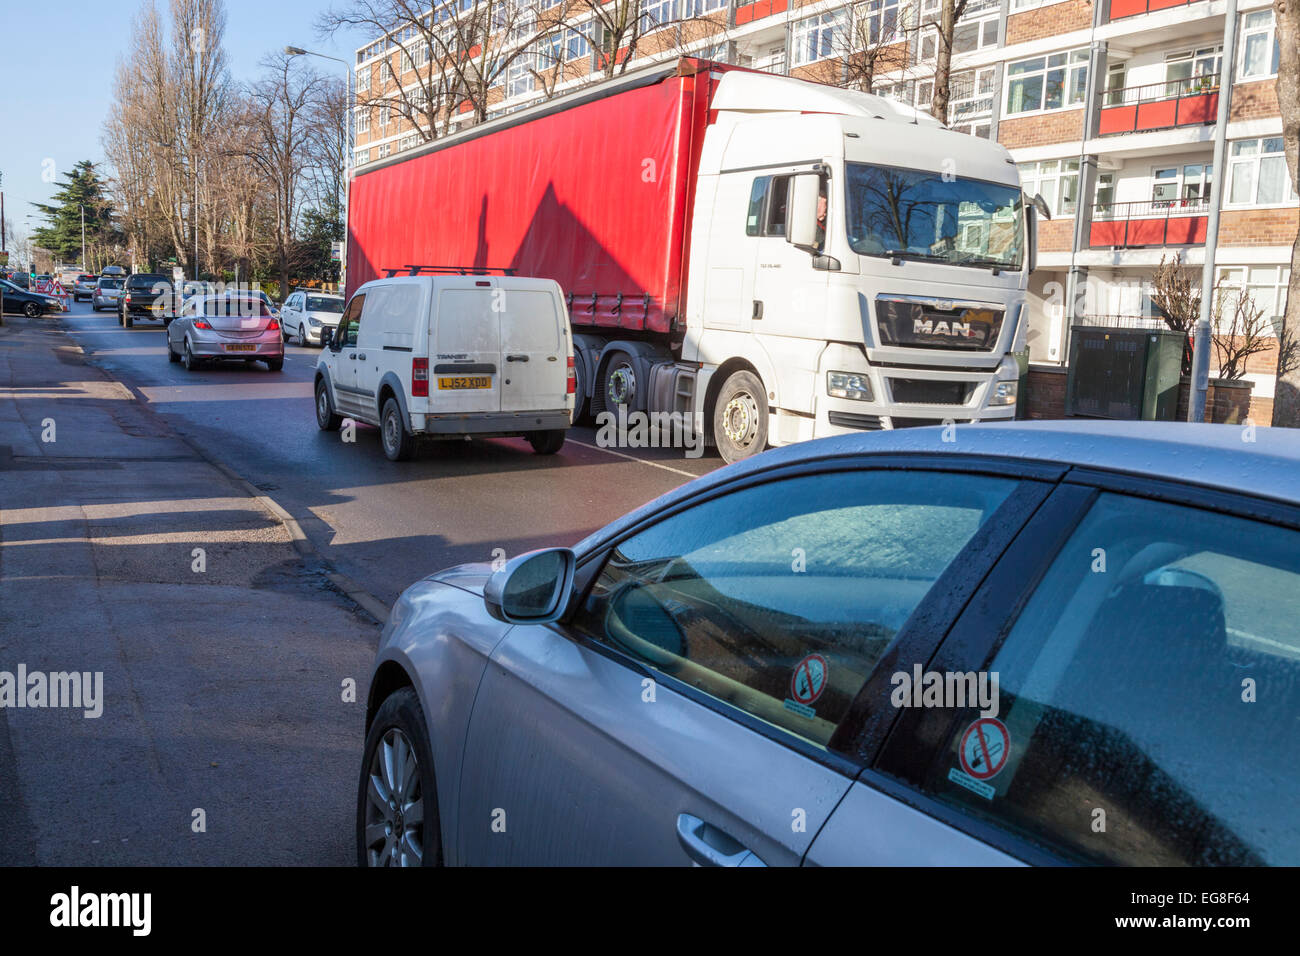 Auto auf dem Pflaster von einer geschäftigen Straße mit starkem Verkehr in einem Wohngebiet geparkt. West Bridgford, Nottinghamshire, England, Großbritannien Stockfoto